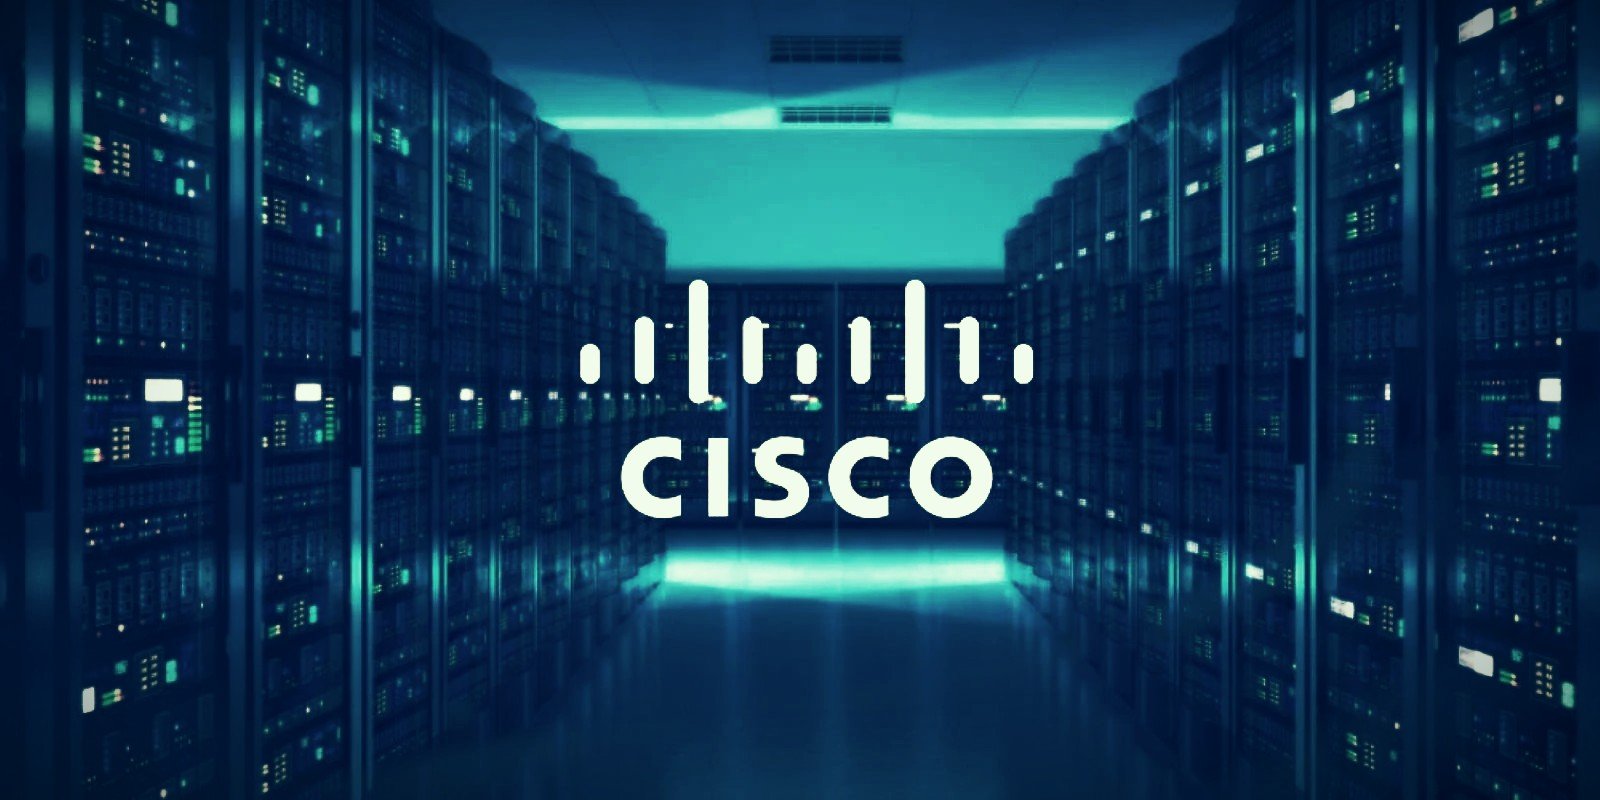 Khám phá bí mật của dòng cáp mạng Cisco